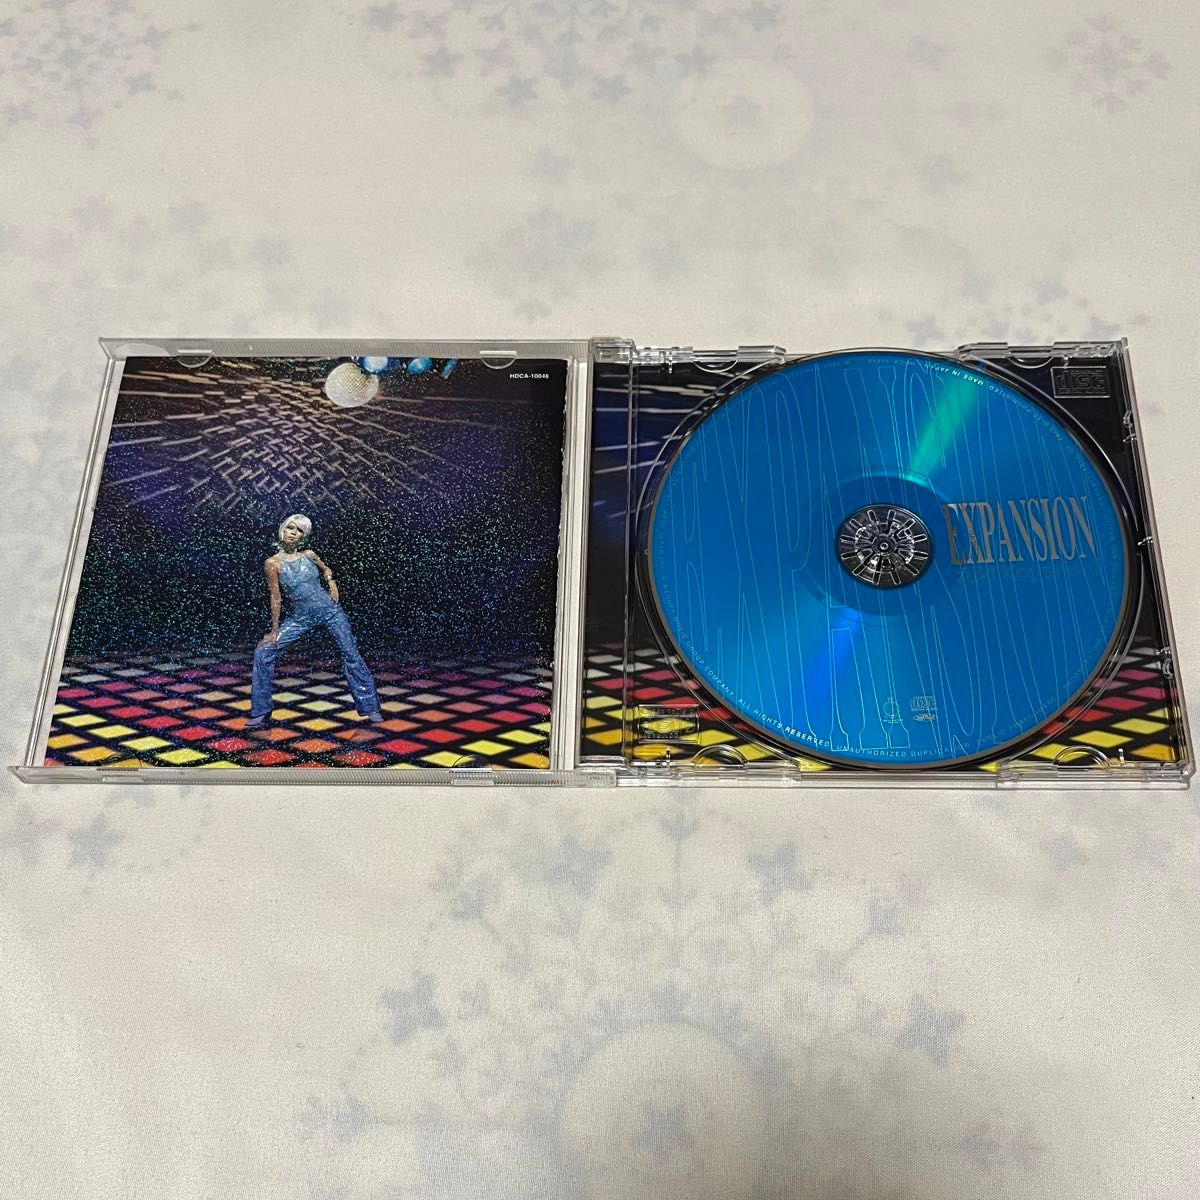 小柳ゆき CD “EXPANSION”